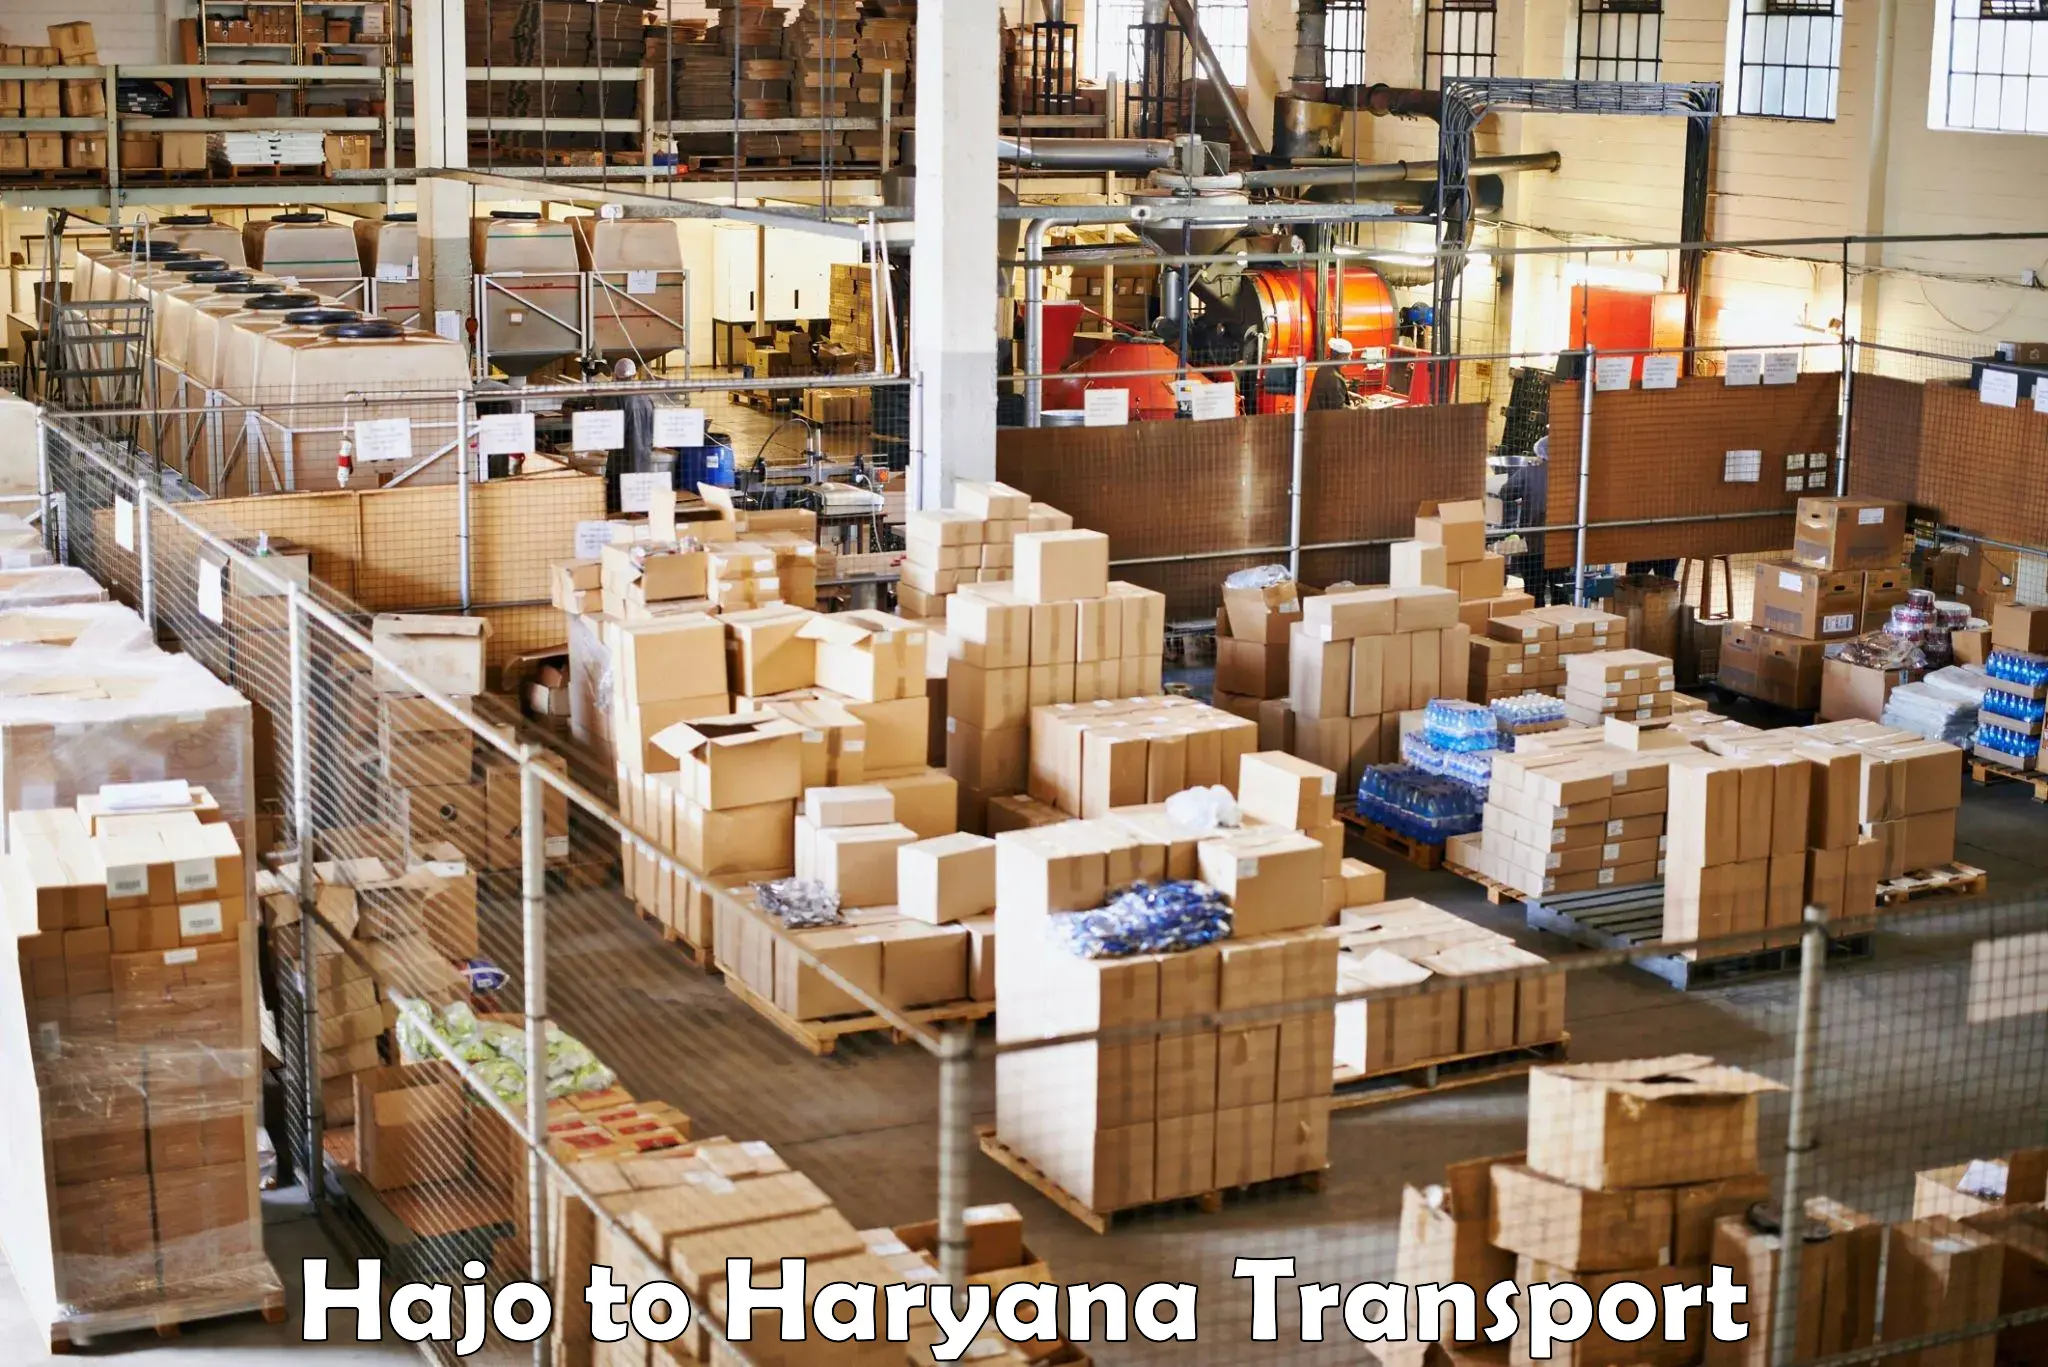 Container transport service Hajo to Gohana